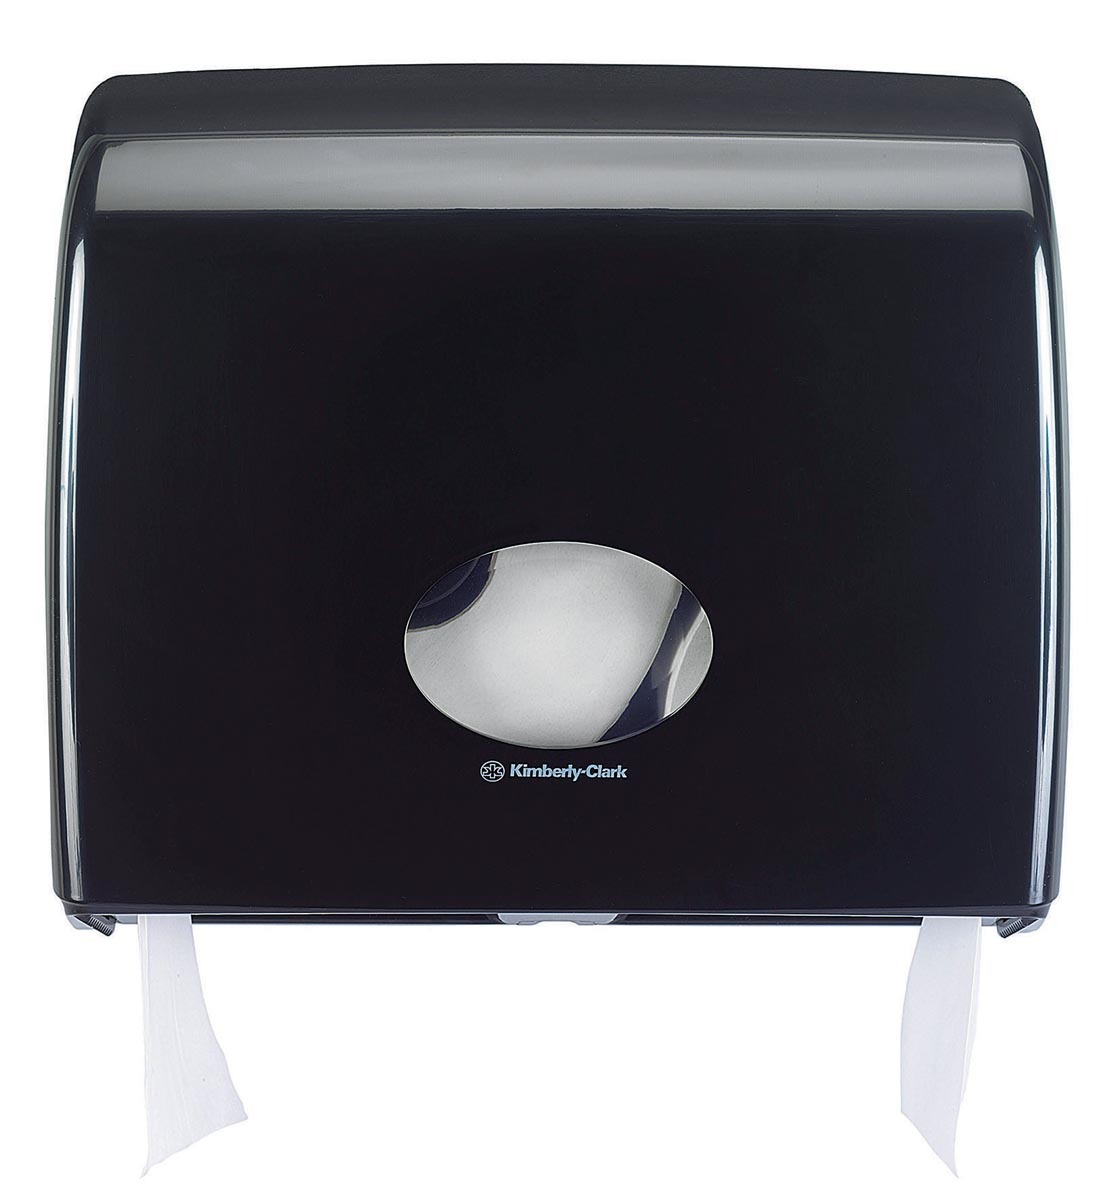 Kimberly-Clark toiletpapierdispenser Aquarius Jumbo zwart